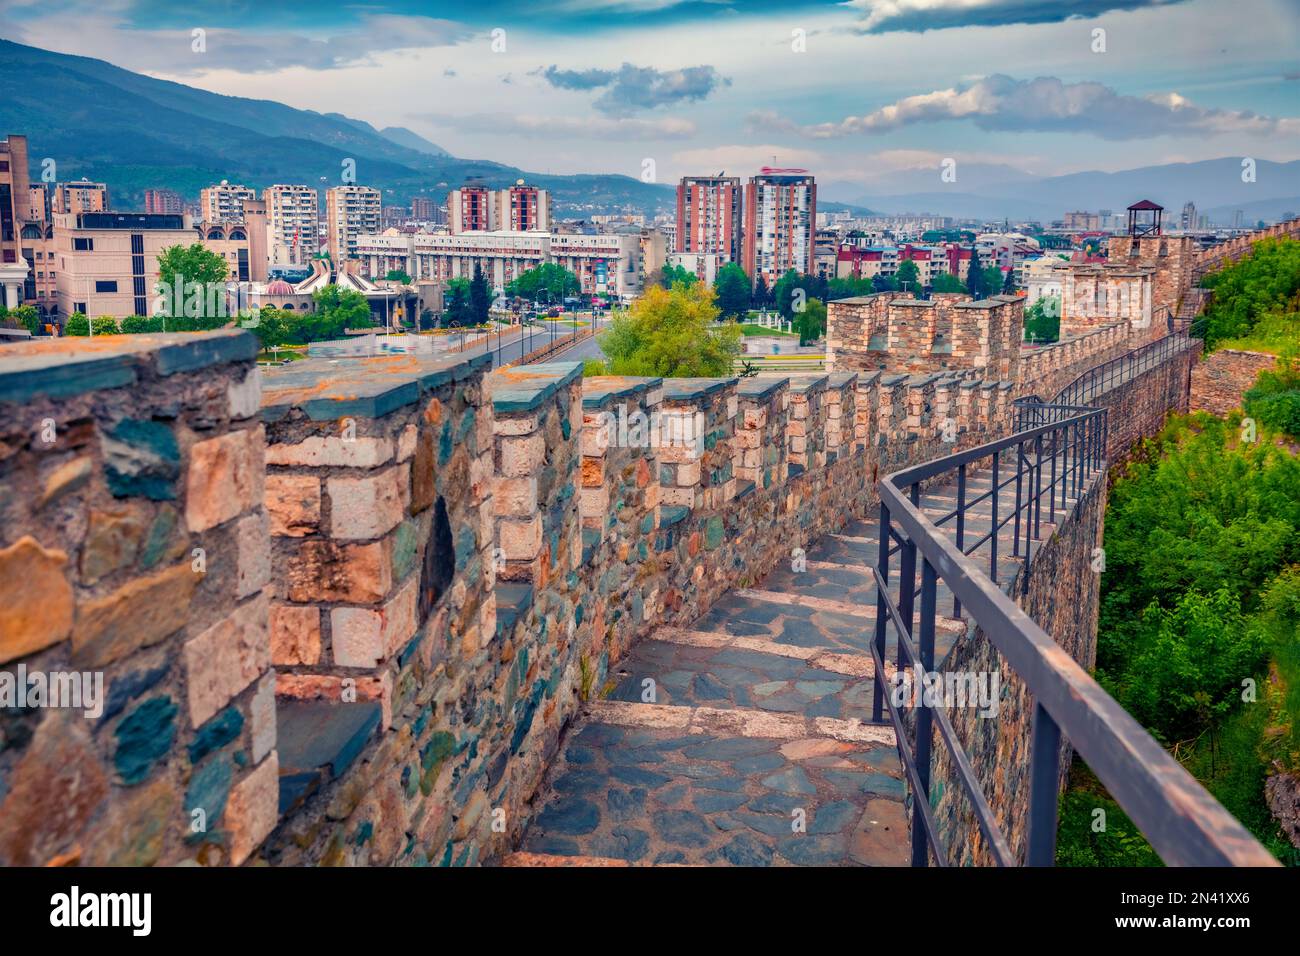 Paysage urbain de printemps attrayant de Skopje - capitale de la Macédoine du Nord, Europe. Mur de pierre de la forteresse de Skopje - vestiges d'une colline de 6th-siècle en pierre FO Banque D'Images